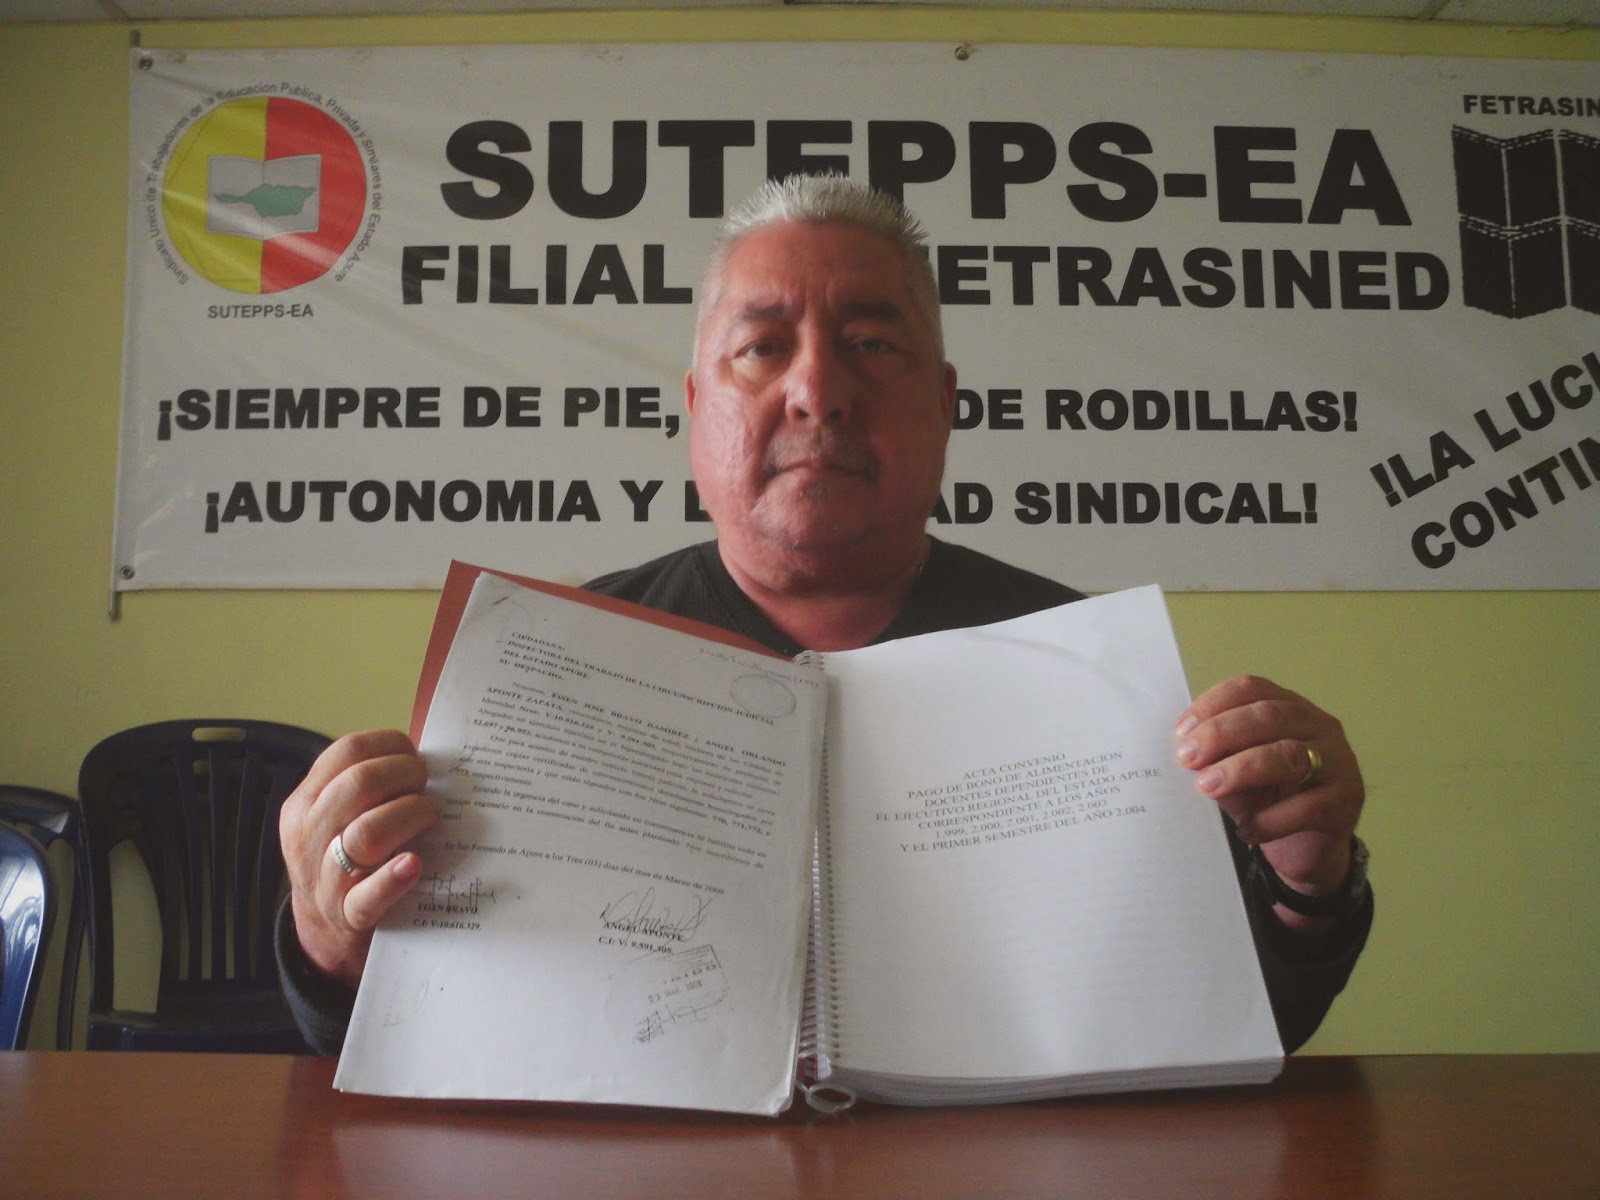 Sutepps-Apure alerta retardo por firma de contrato colectivo de docentes regionales antes gobernación de Apure.